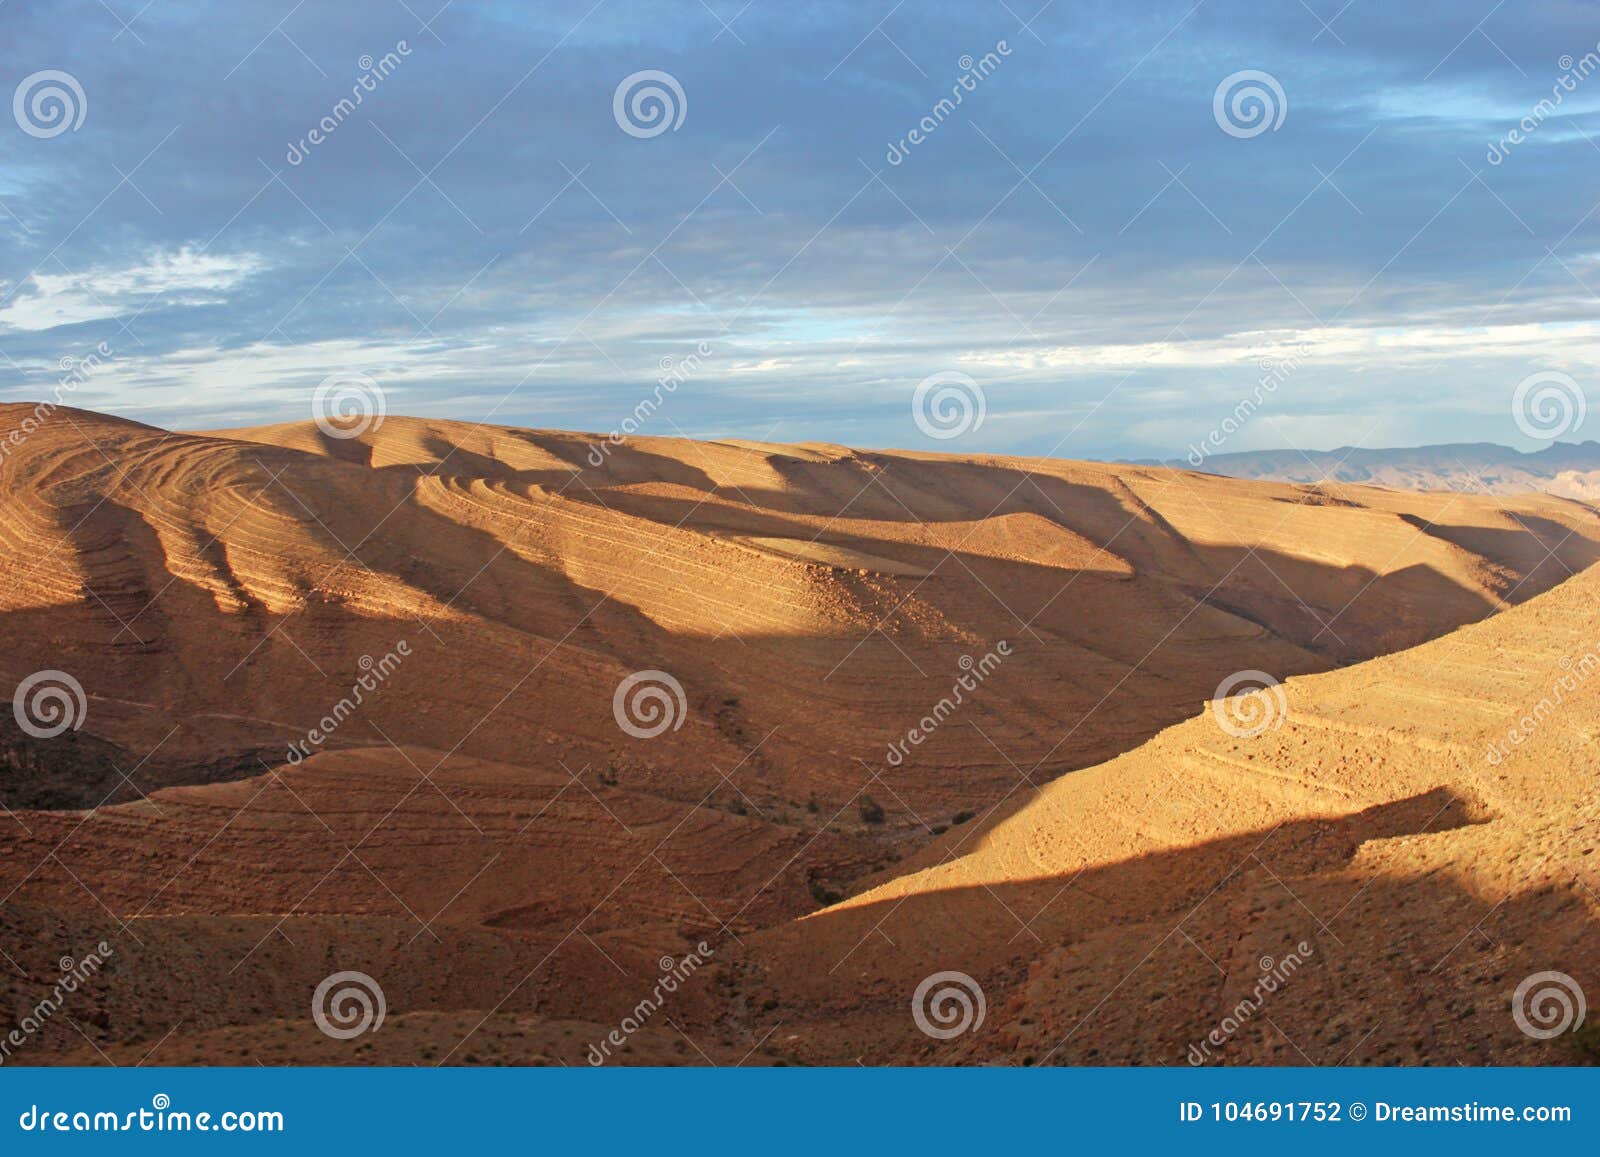 morrocco mountains